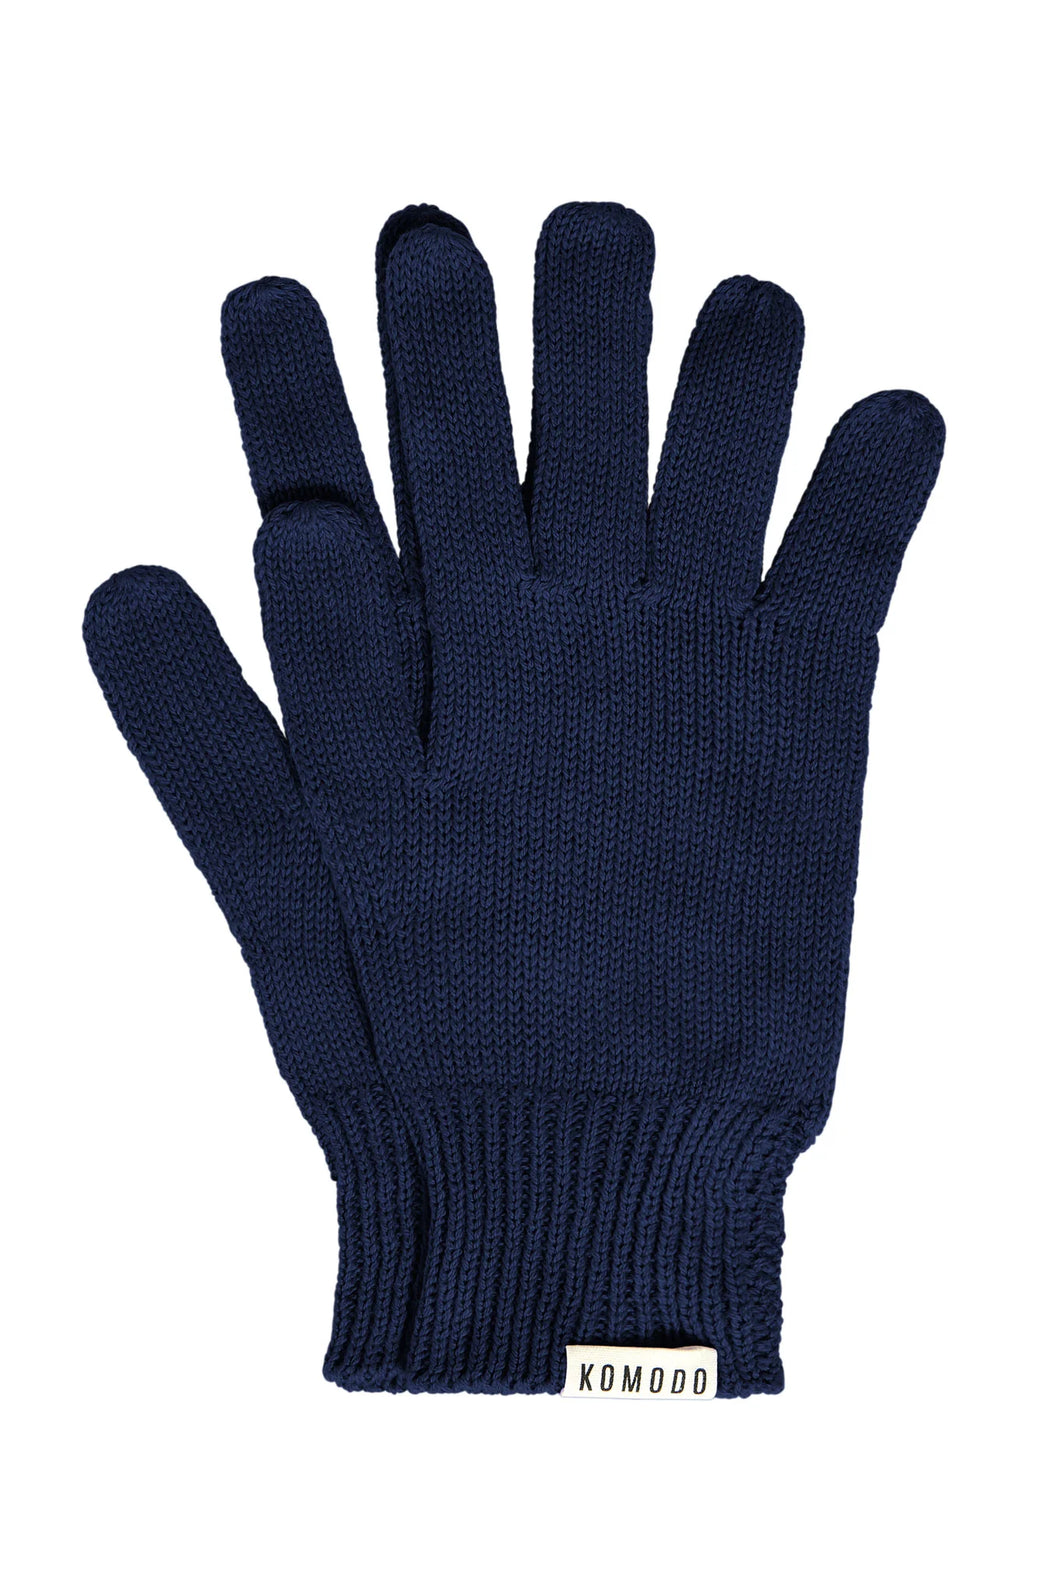 Komodo City Gloves Navy